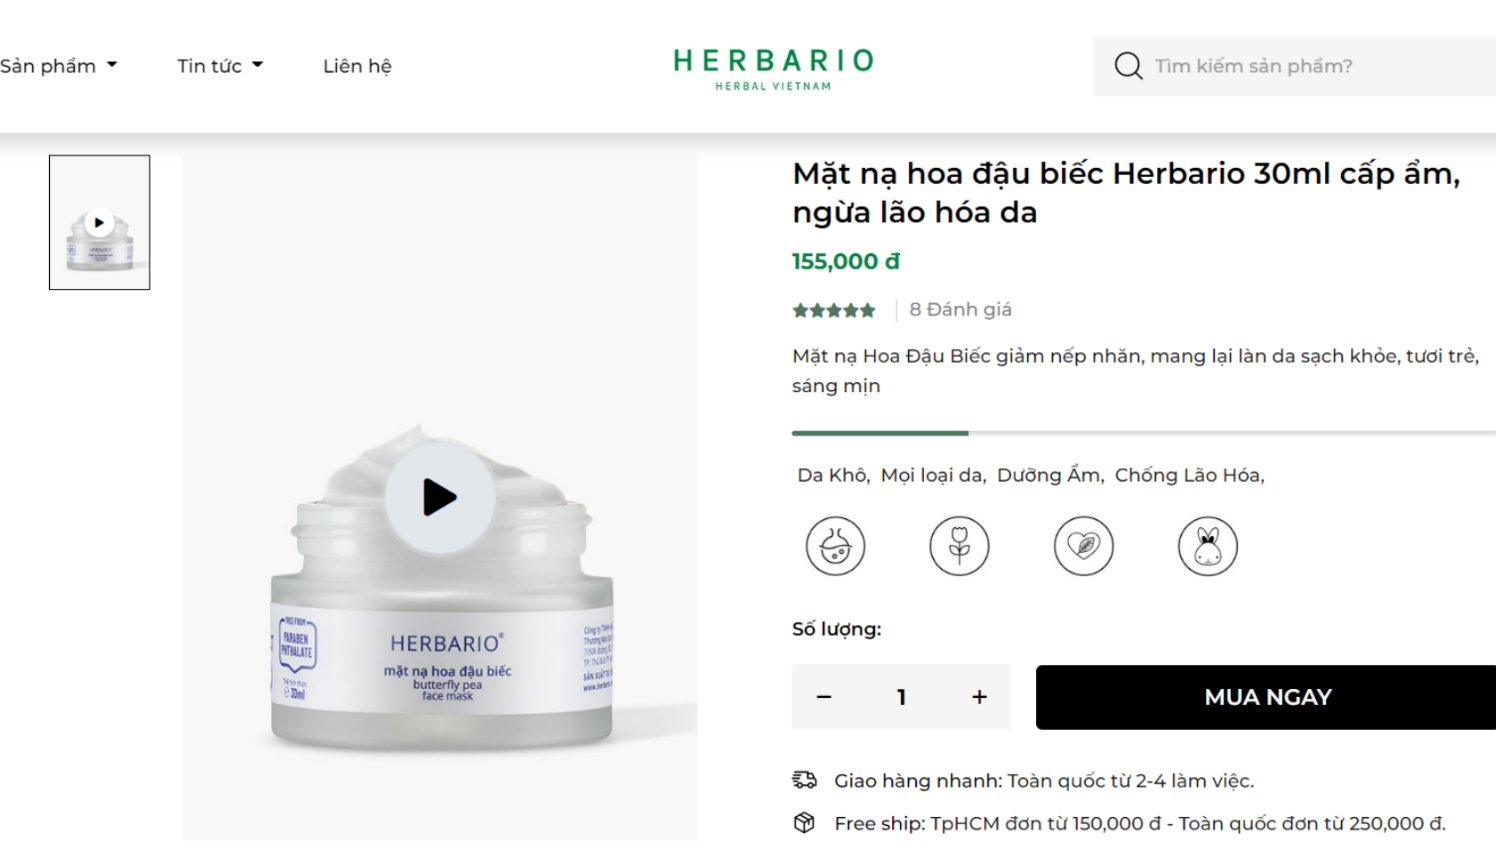 Sản phẩm được đăng bán tại website chính hãng Herbario